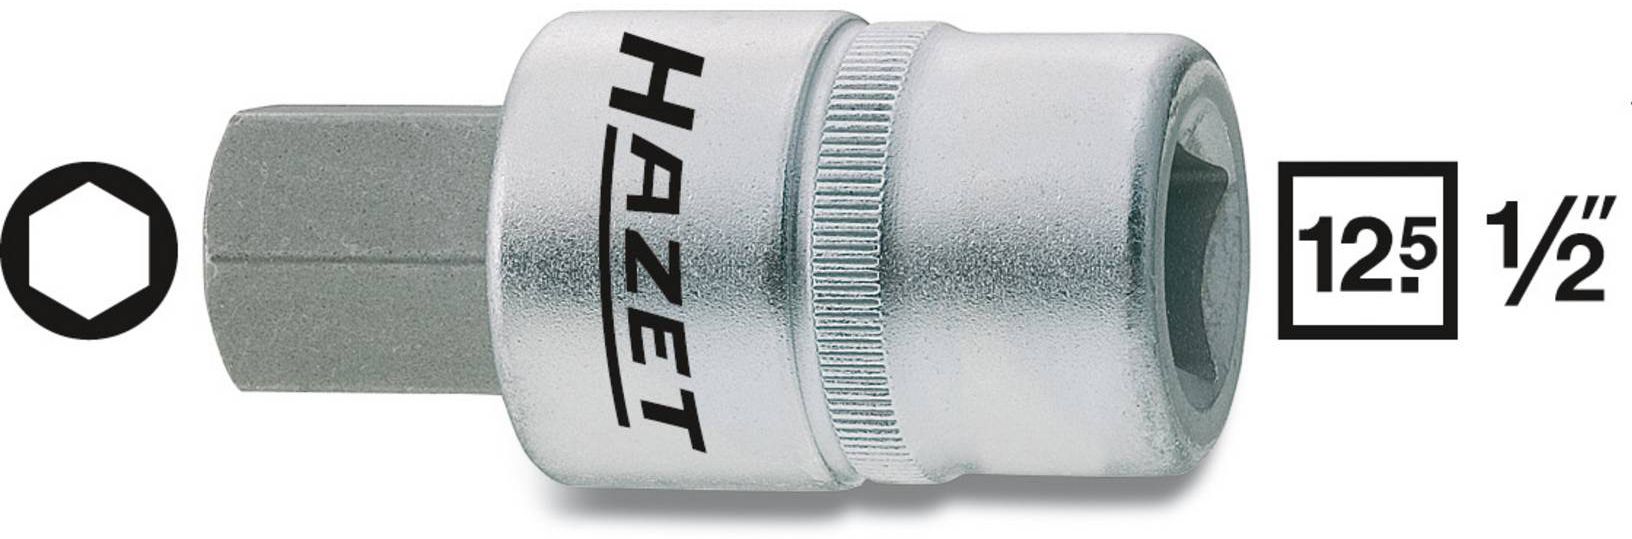 HAZET Schraubendreher-Einsatz, Inbus 986-4mm, 1/2", L: 60mm, D: 23mm - Steck- und Drehmomentschlüssel